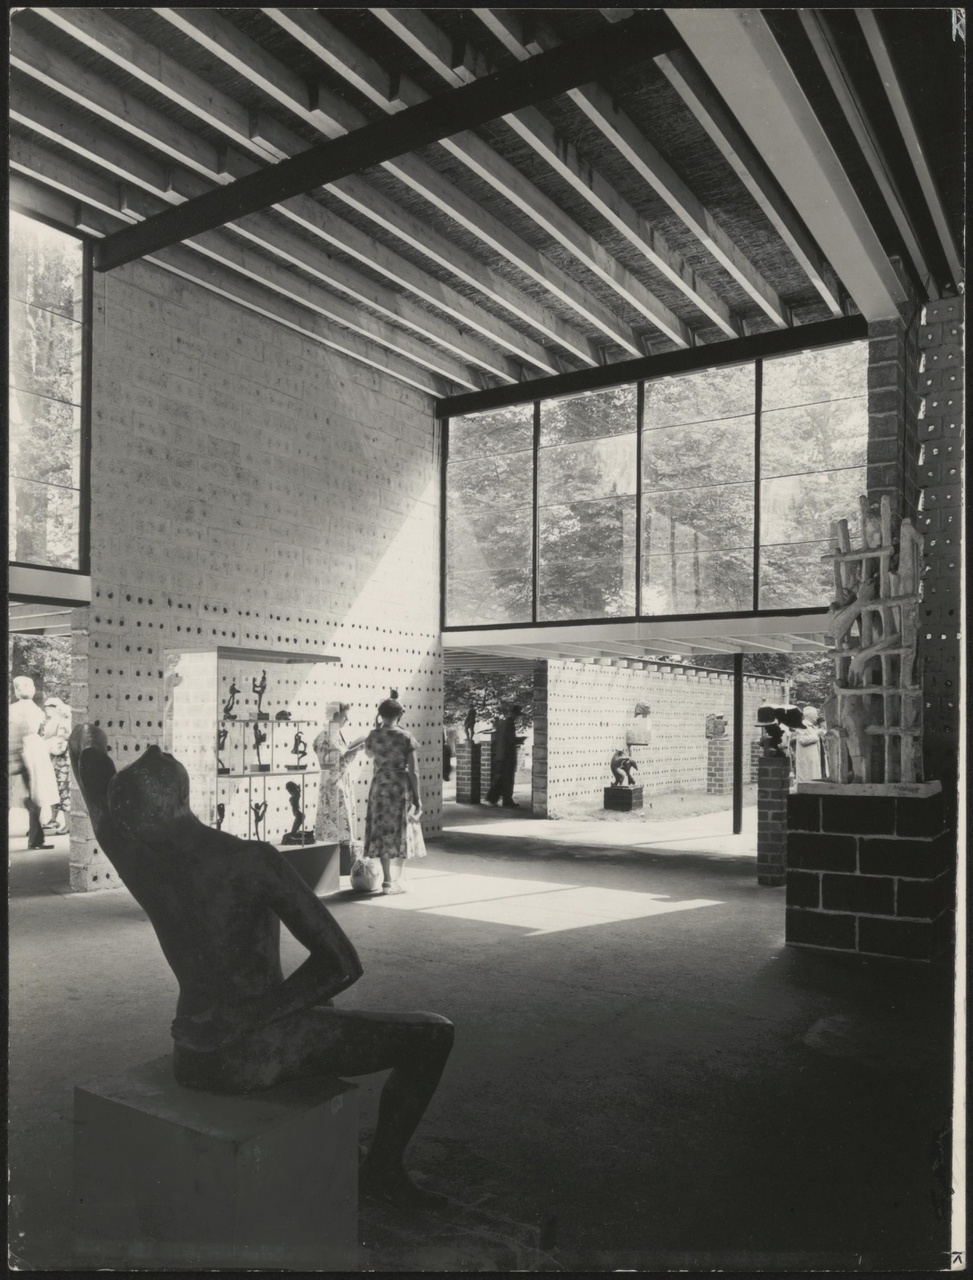 Afbeelding van expo-paviljoen Sonsbeek, ca.1955, interieur vanachter zittend beeld